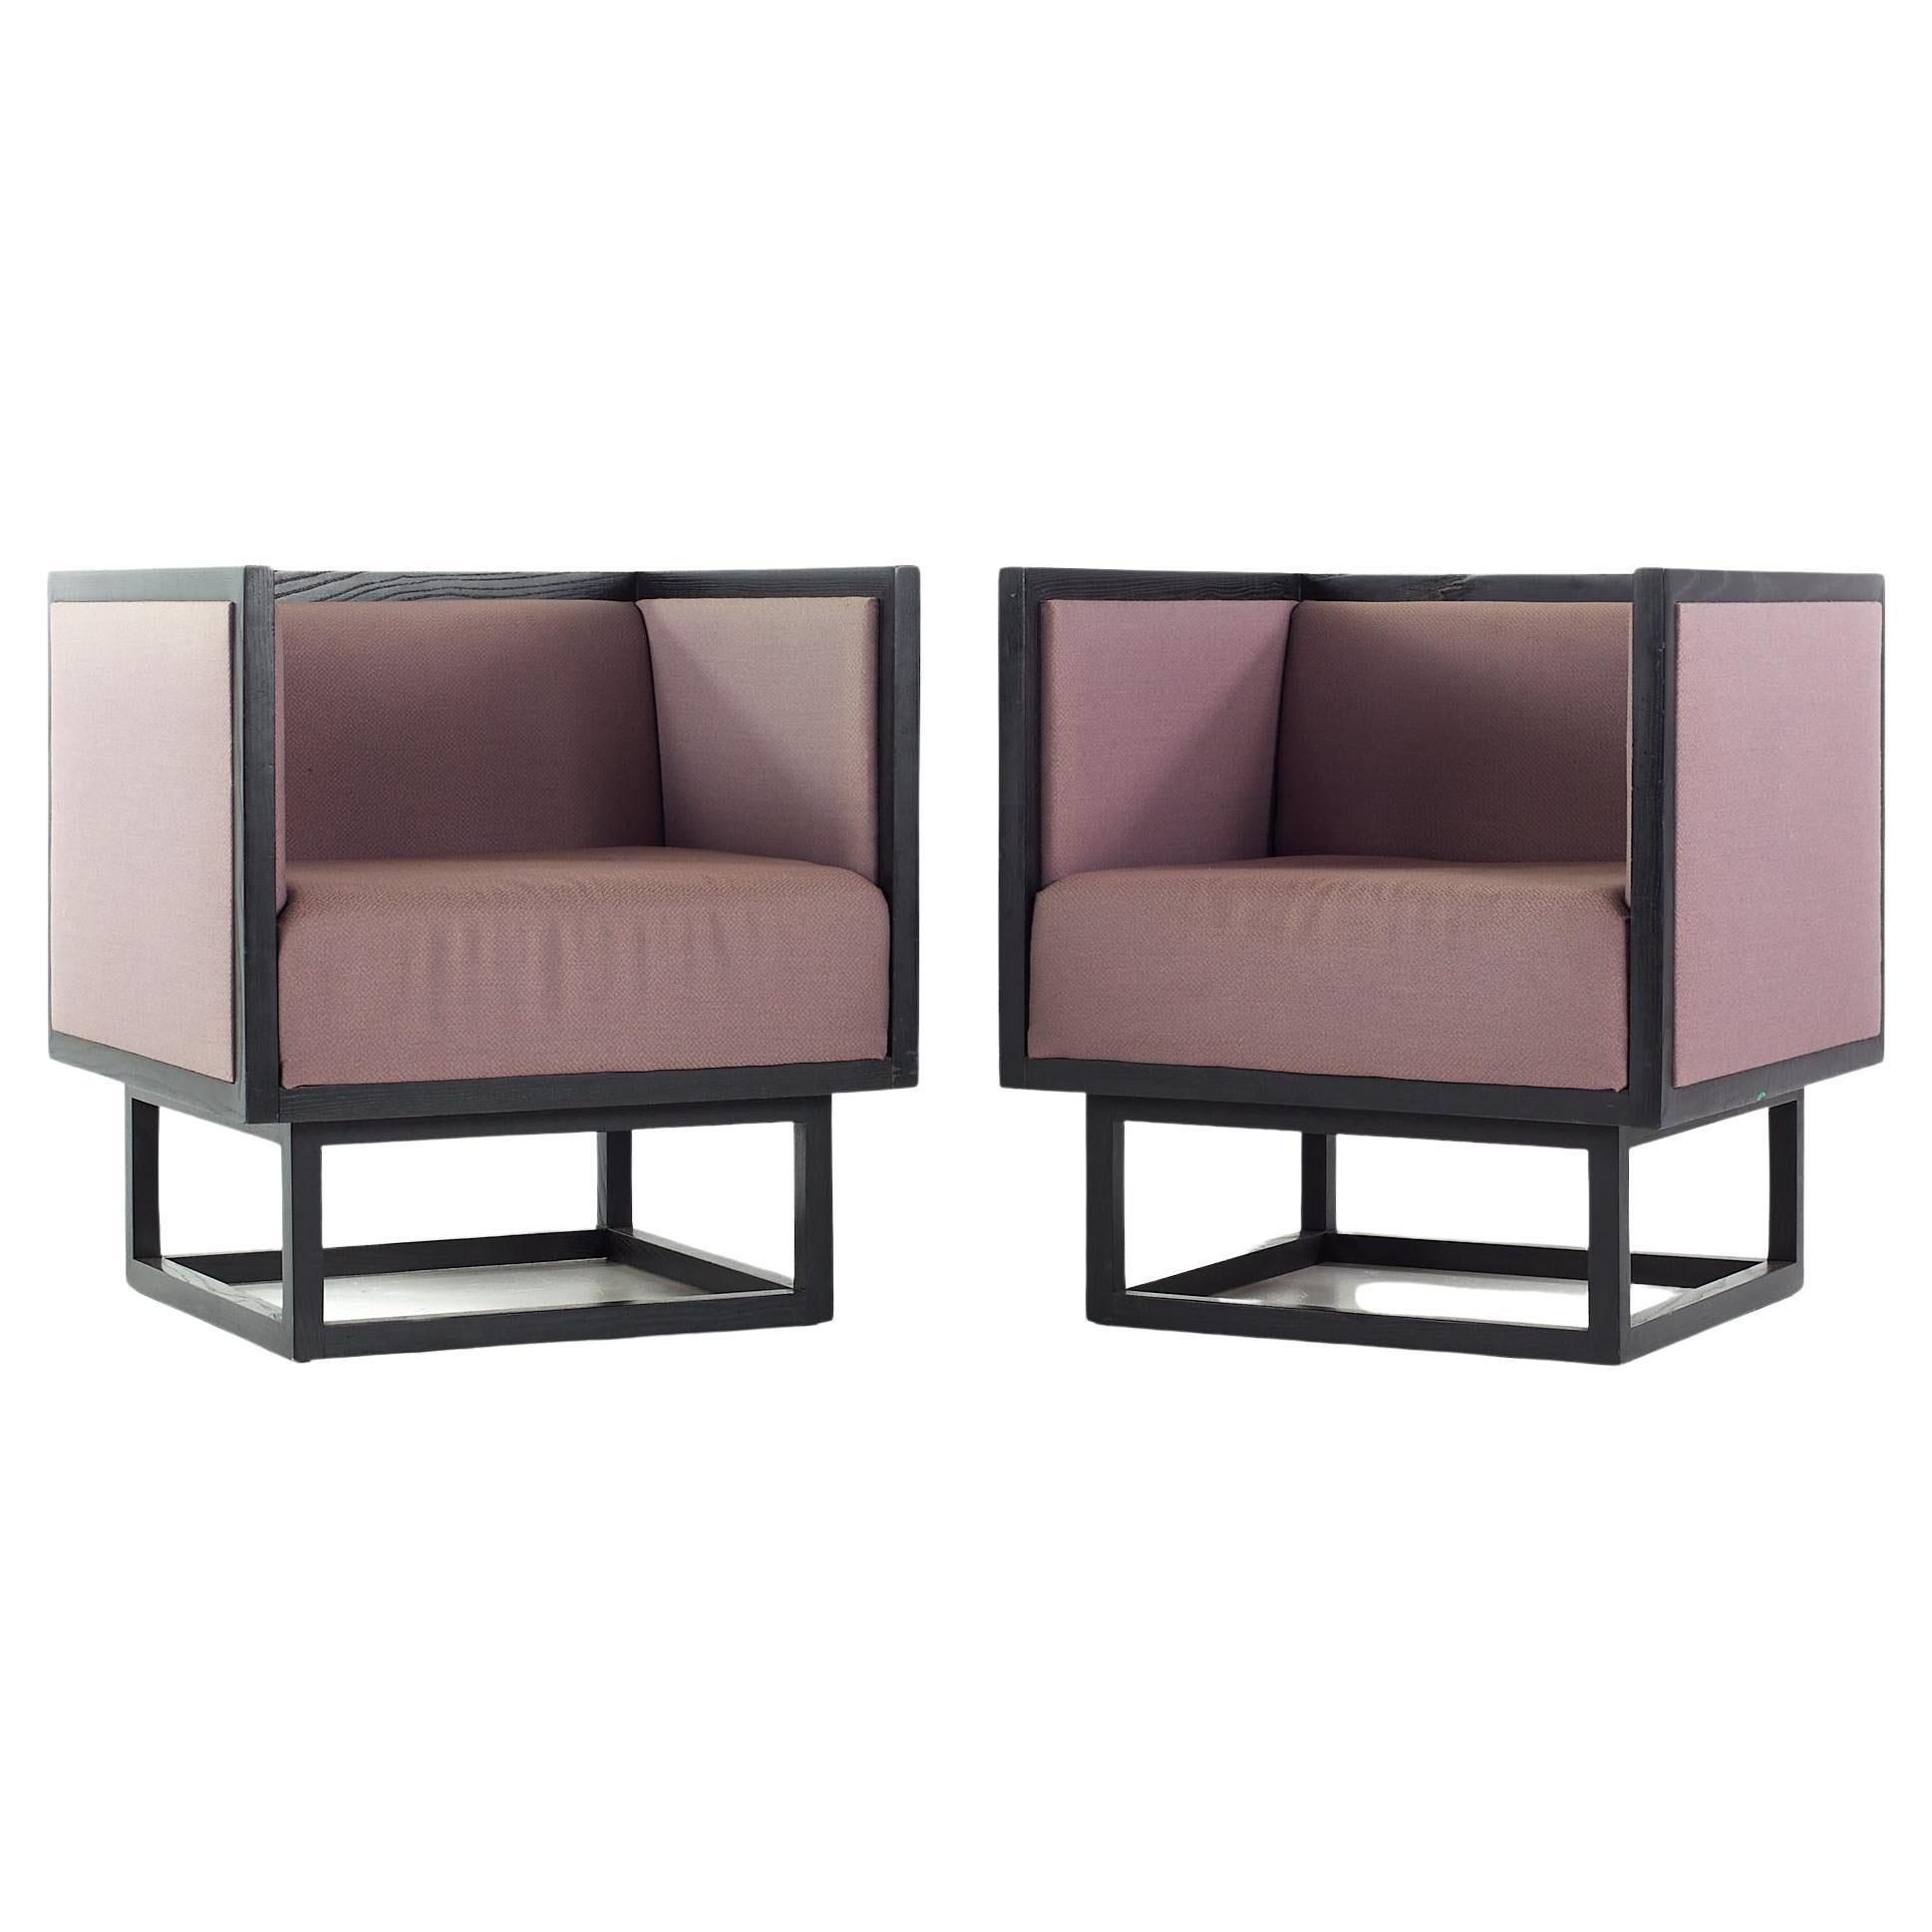 Josef Hoffman Style Midcentury Club Chairs, Pair